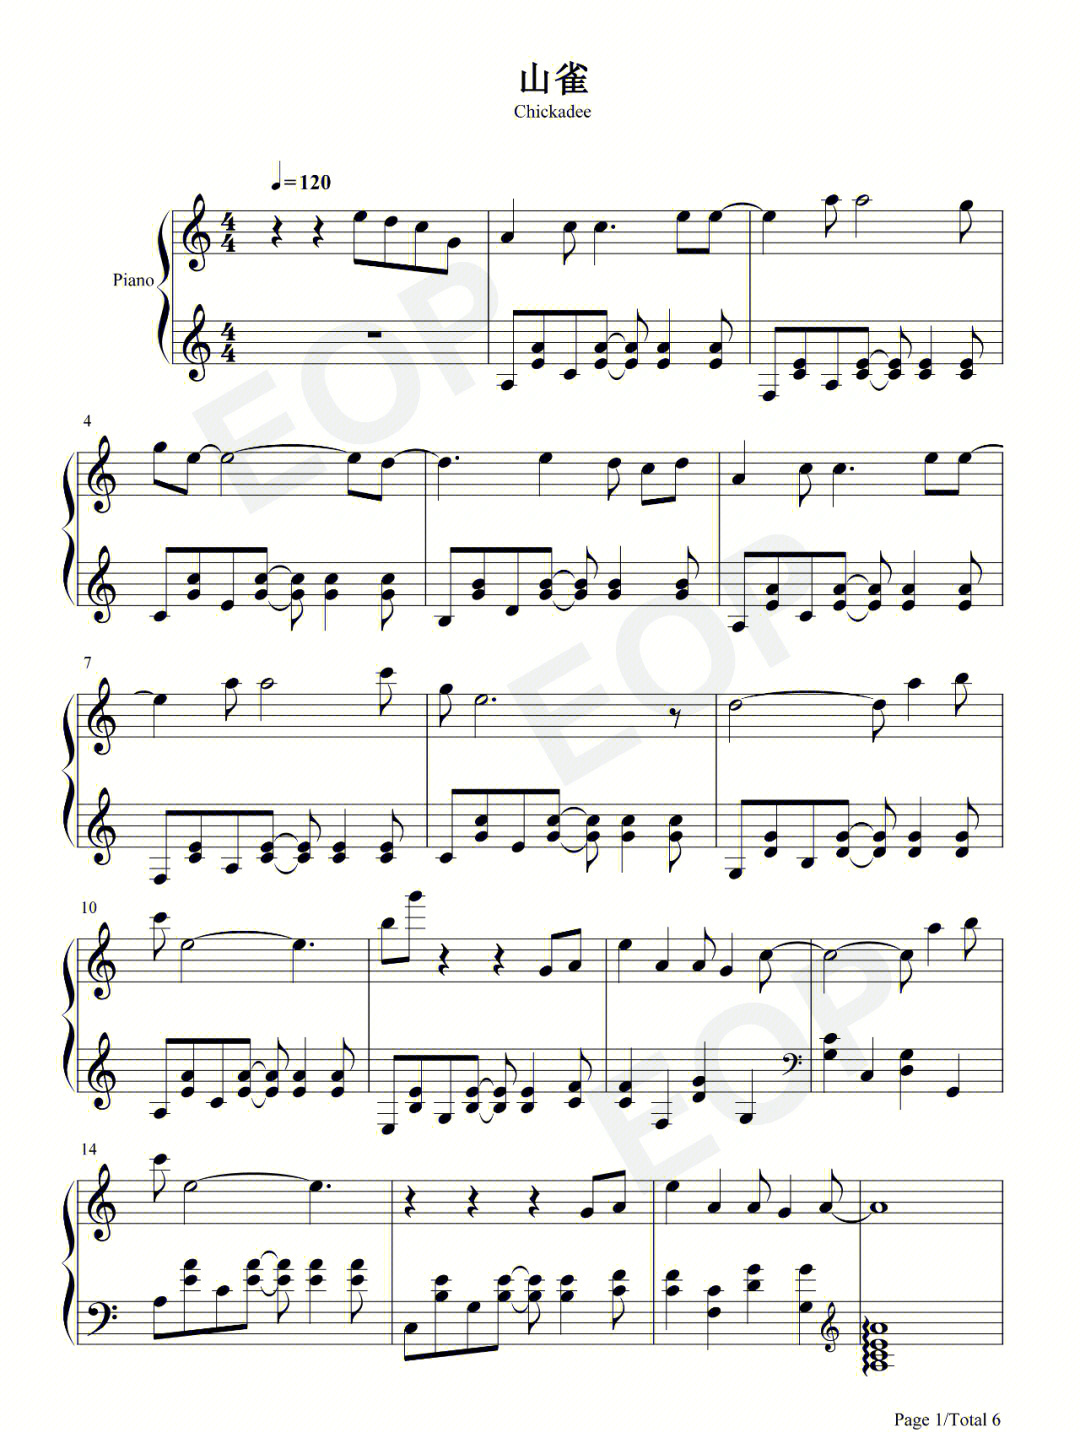 麻雀钢琴谱完整版图片